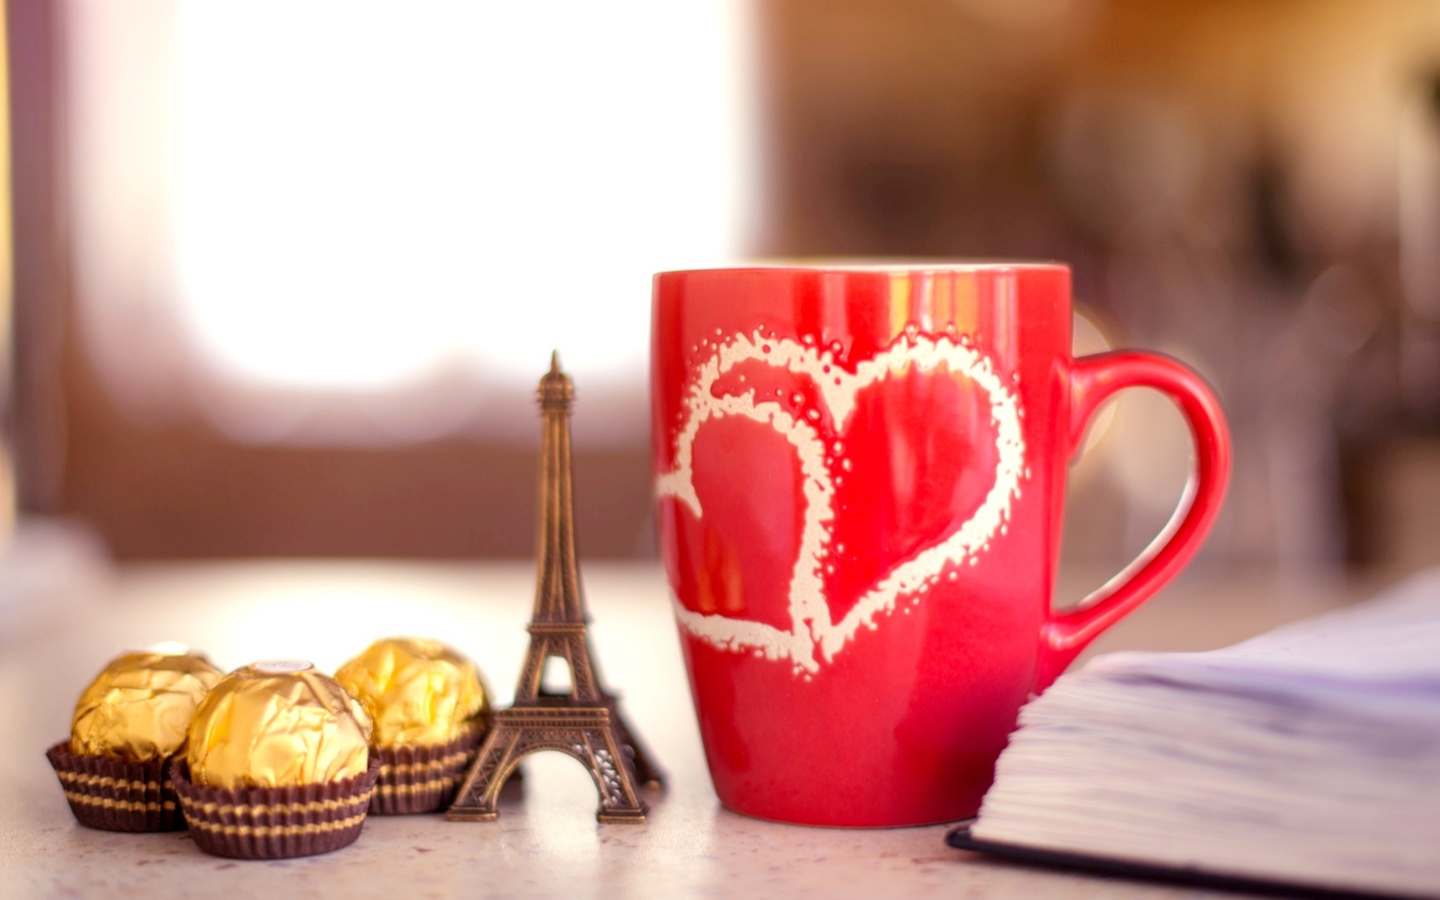 Обои Paris Always In My Heart 1440x900